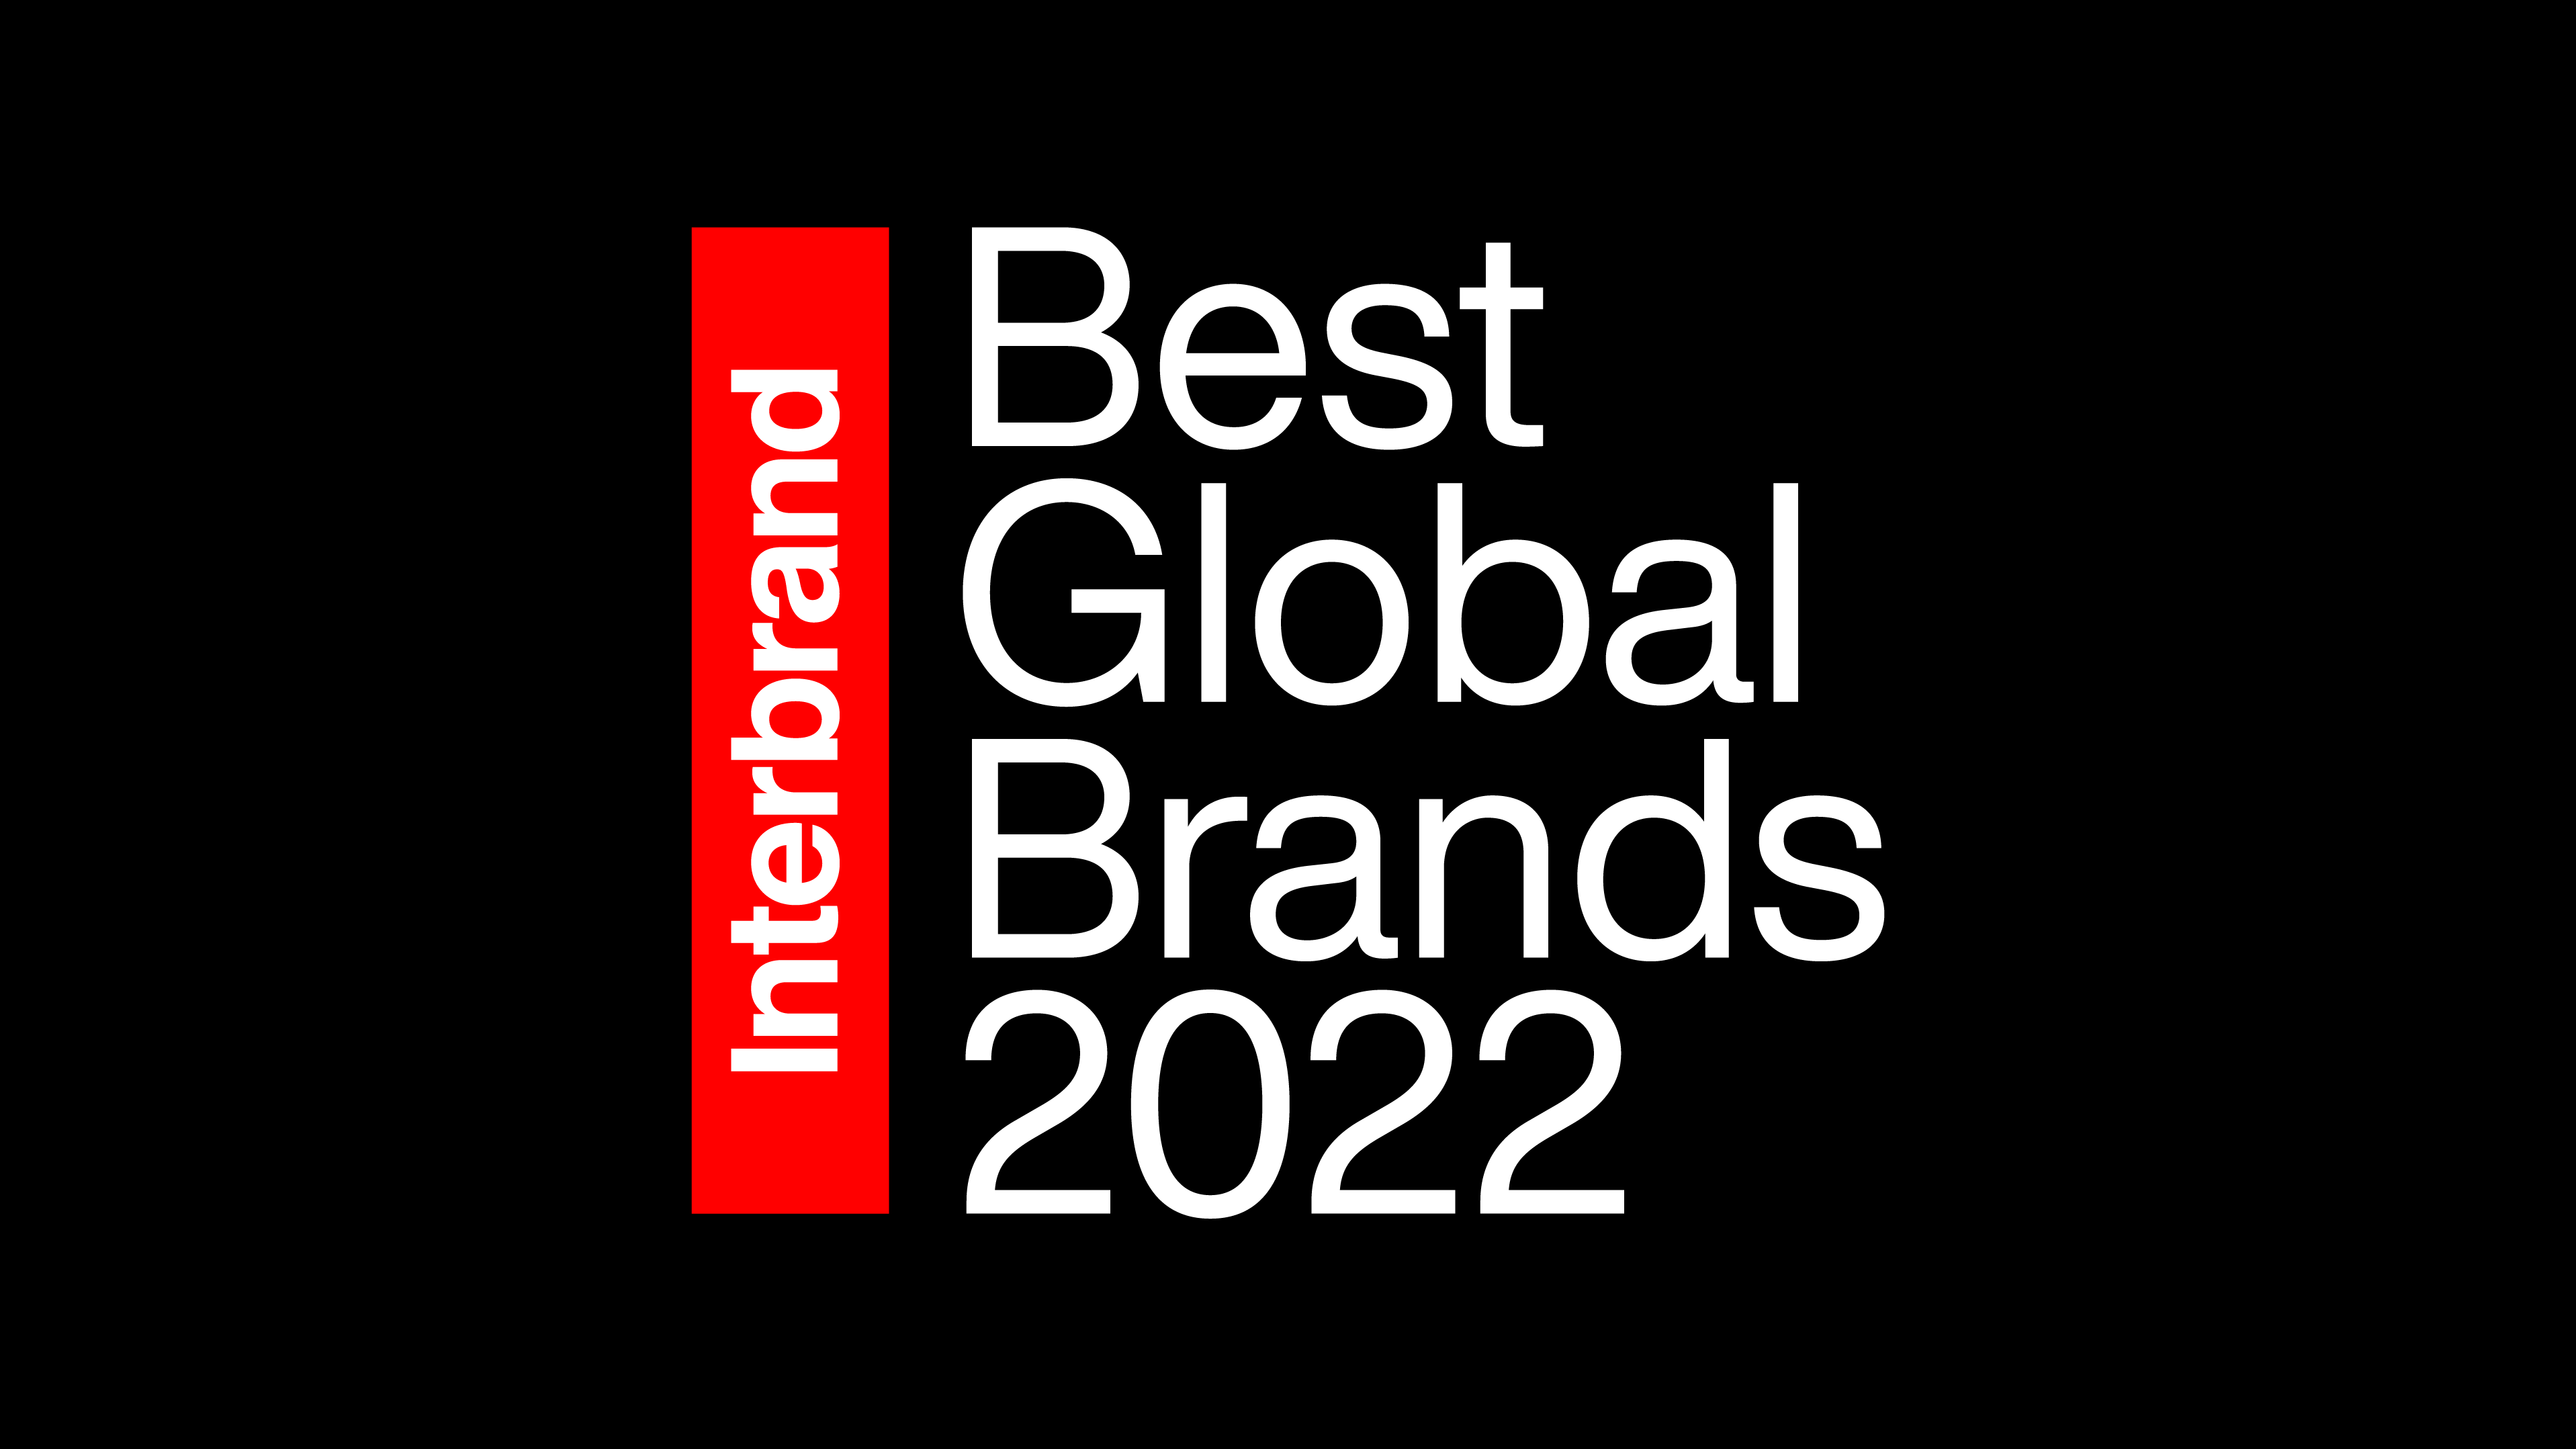 Foto de El valor de marca de Samsung Electronics aumenta doble dígito y ocupa un lugar en la lista de las cinco ‘Mejores Marcas Globales’ de 2022